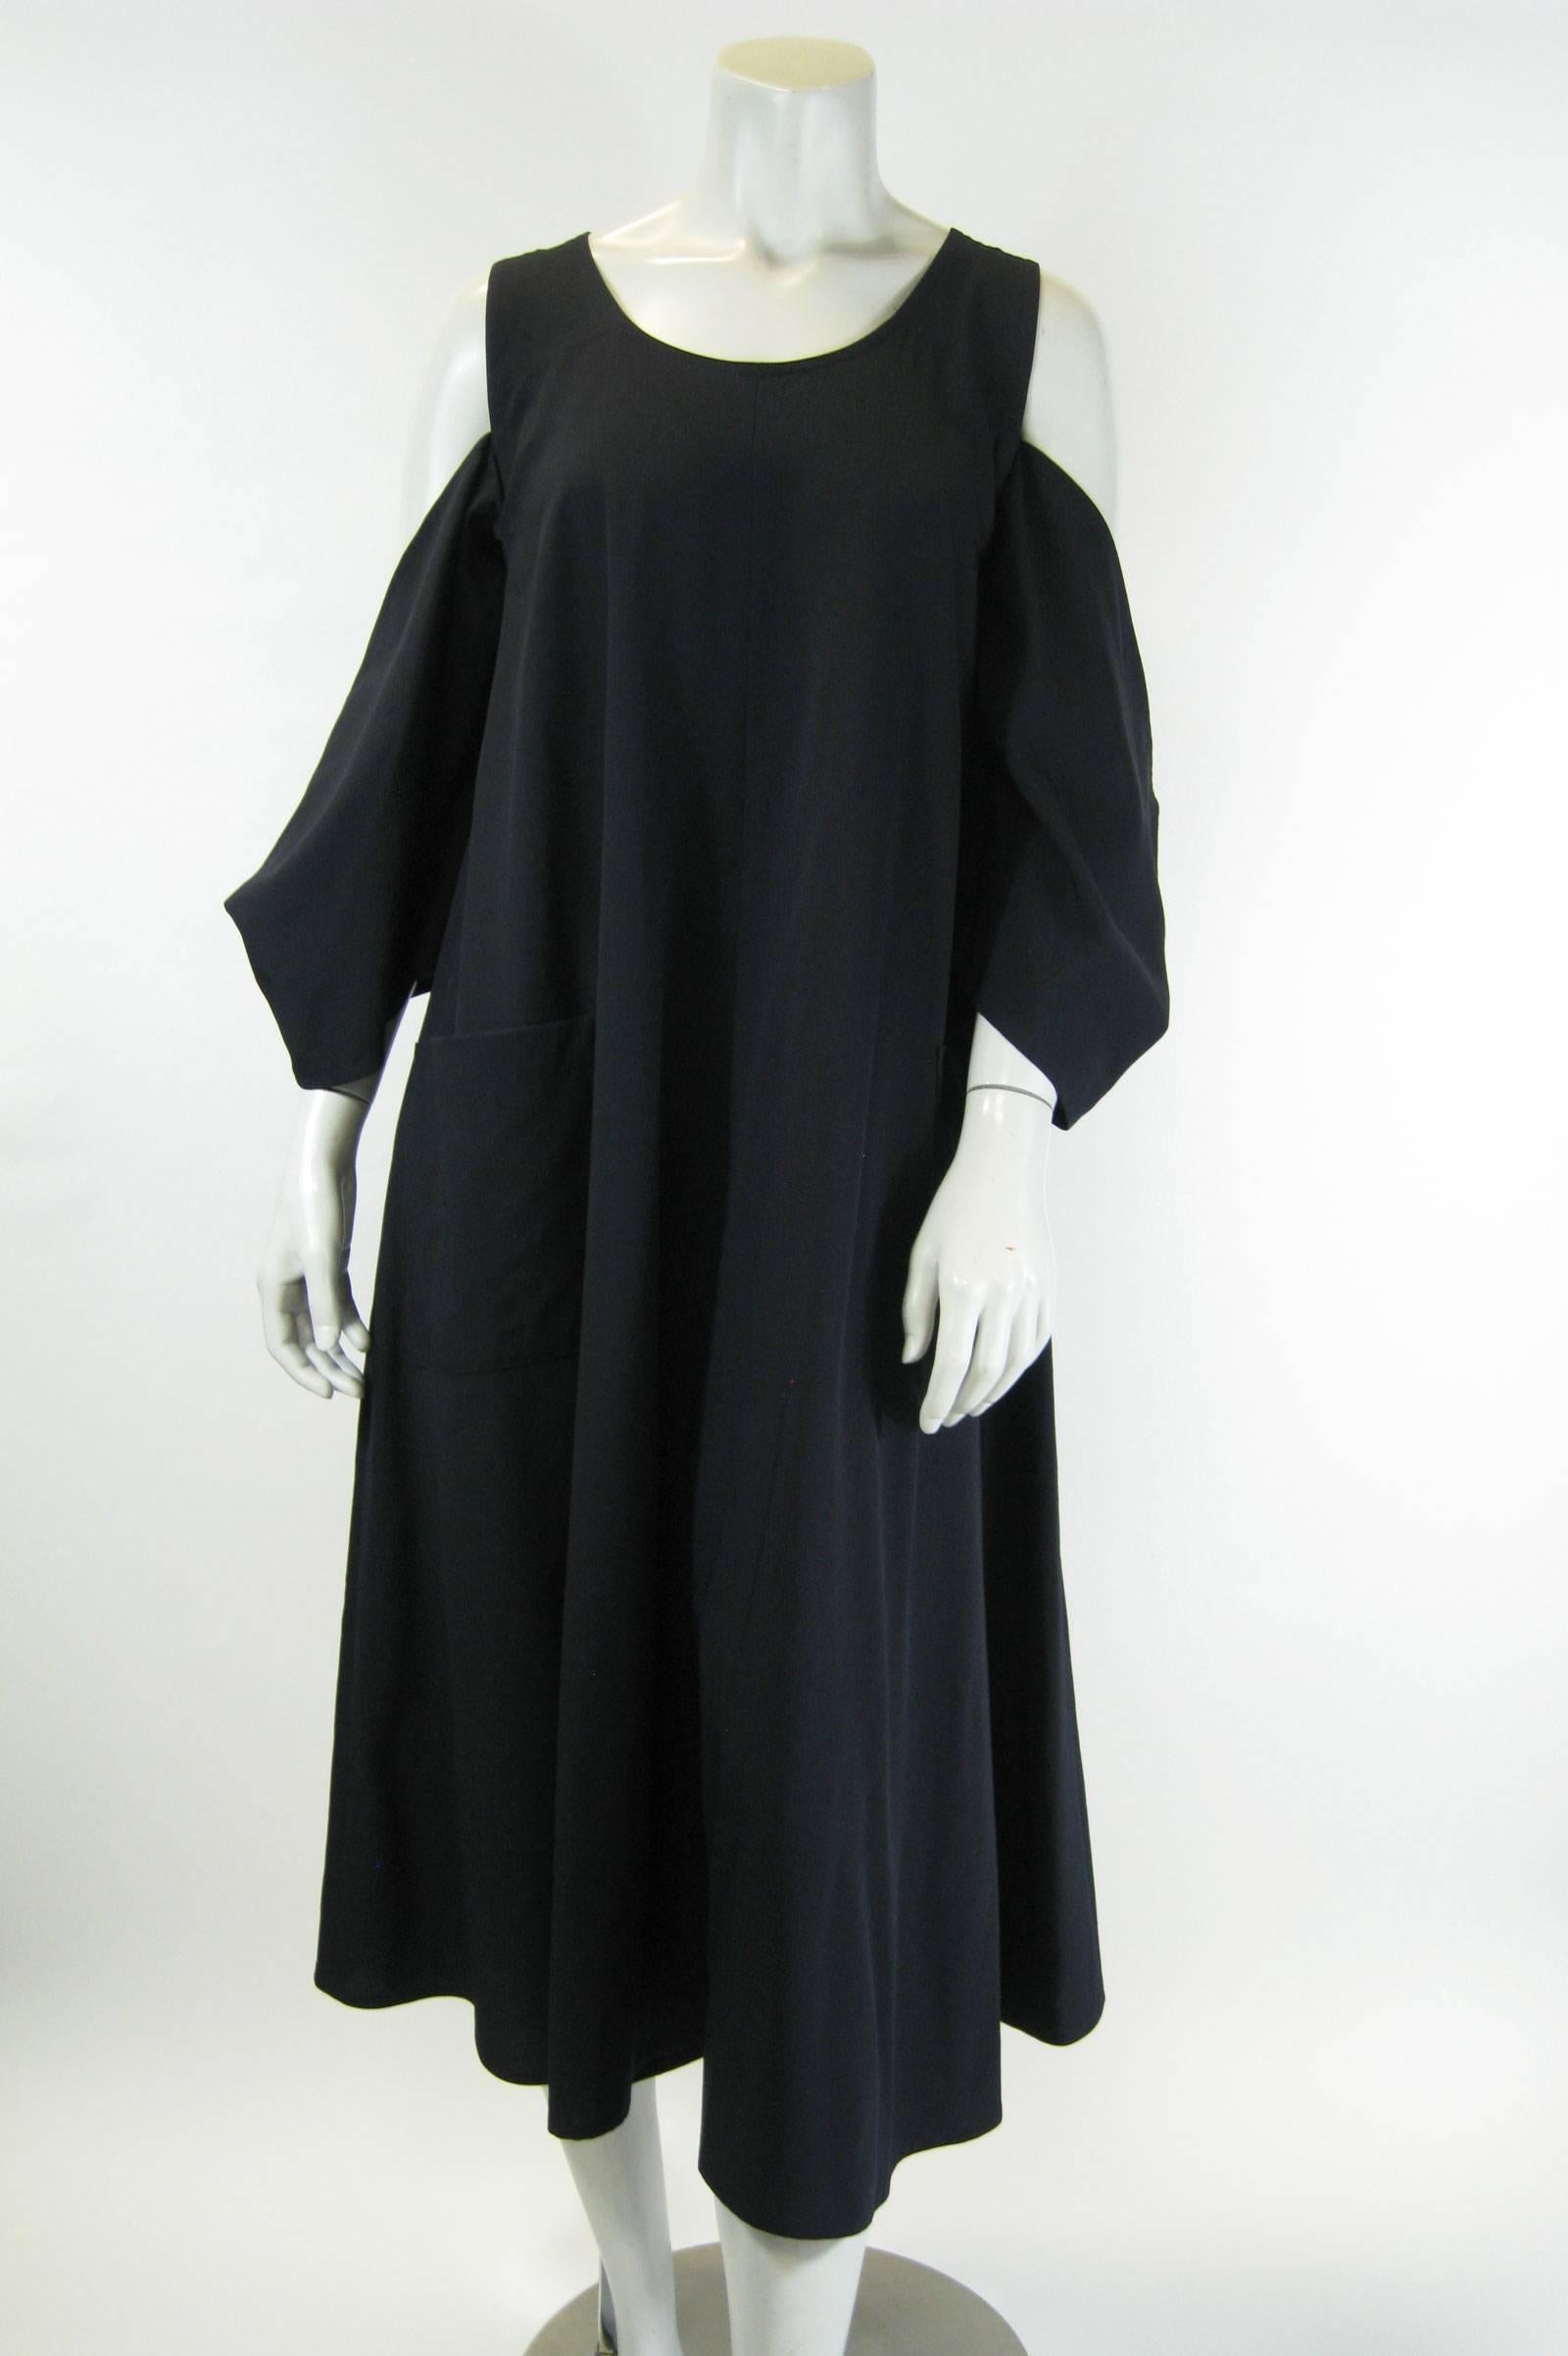 Dunkelnavyblaues Kleid von Yohji Yamamoto
Lockere A-Linie mit atemberaubenden ausgeschnittenen Ärmeln im Kimono-Stil.
Große aufgesetzte Taschen.
Raffinierte Wolle/Nylon-Mischung.
Markiert eine Größe Small.

Büste: 38